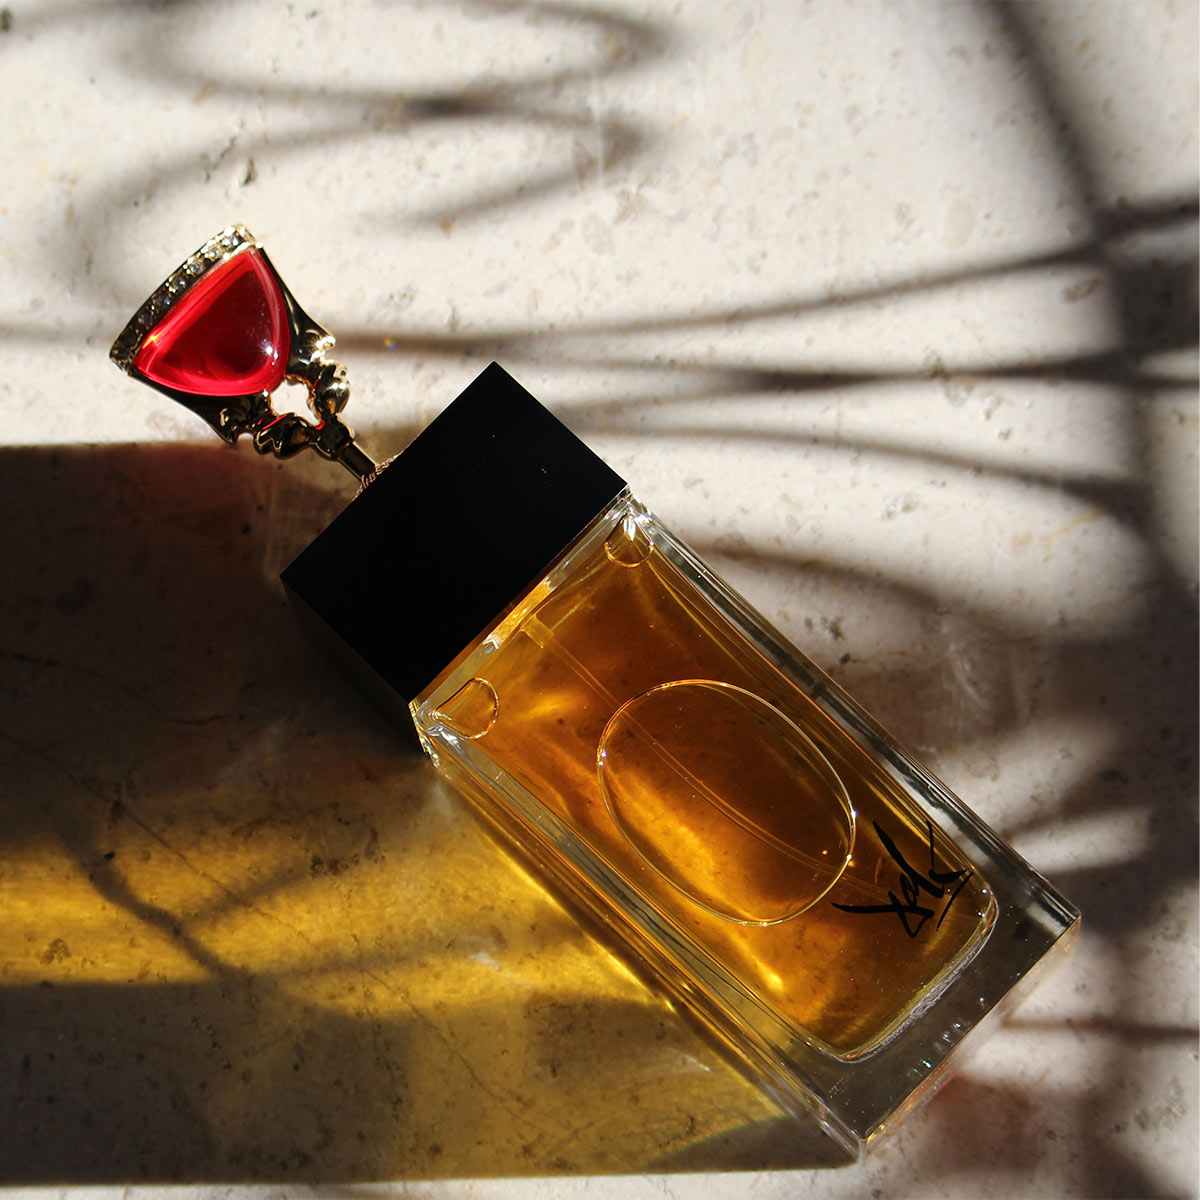 Calice De La Séduction Eternelle "The Chalice" - Dali Haute Parfumerie - EDP 100ml